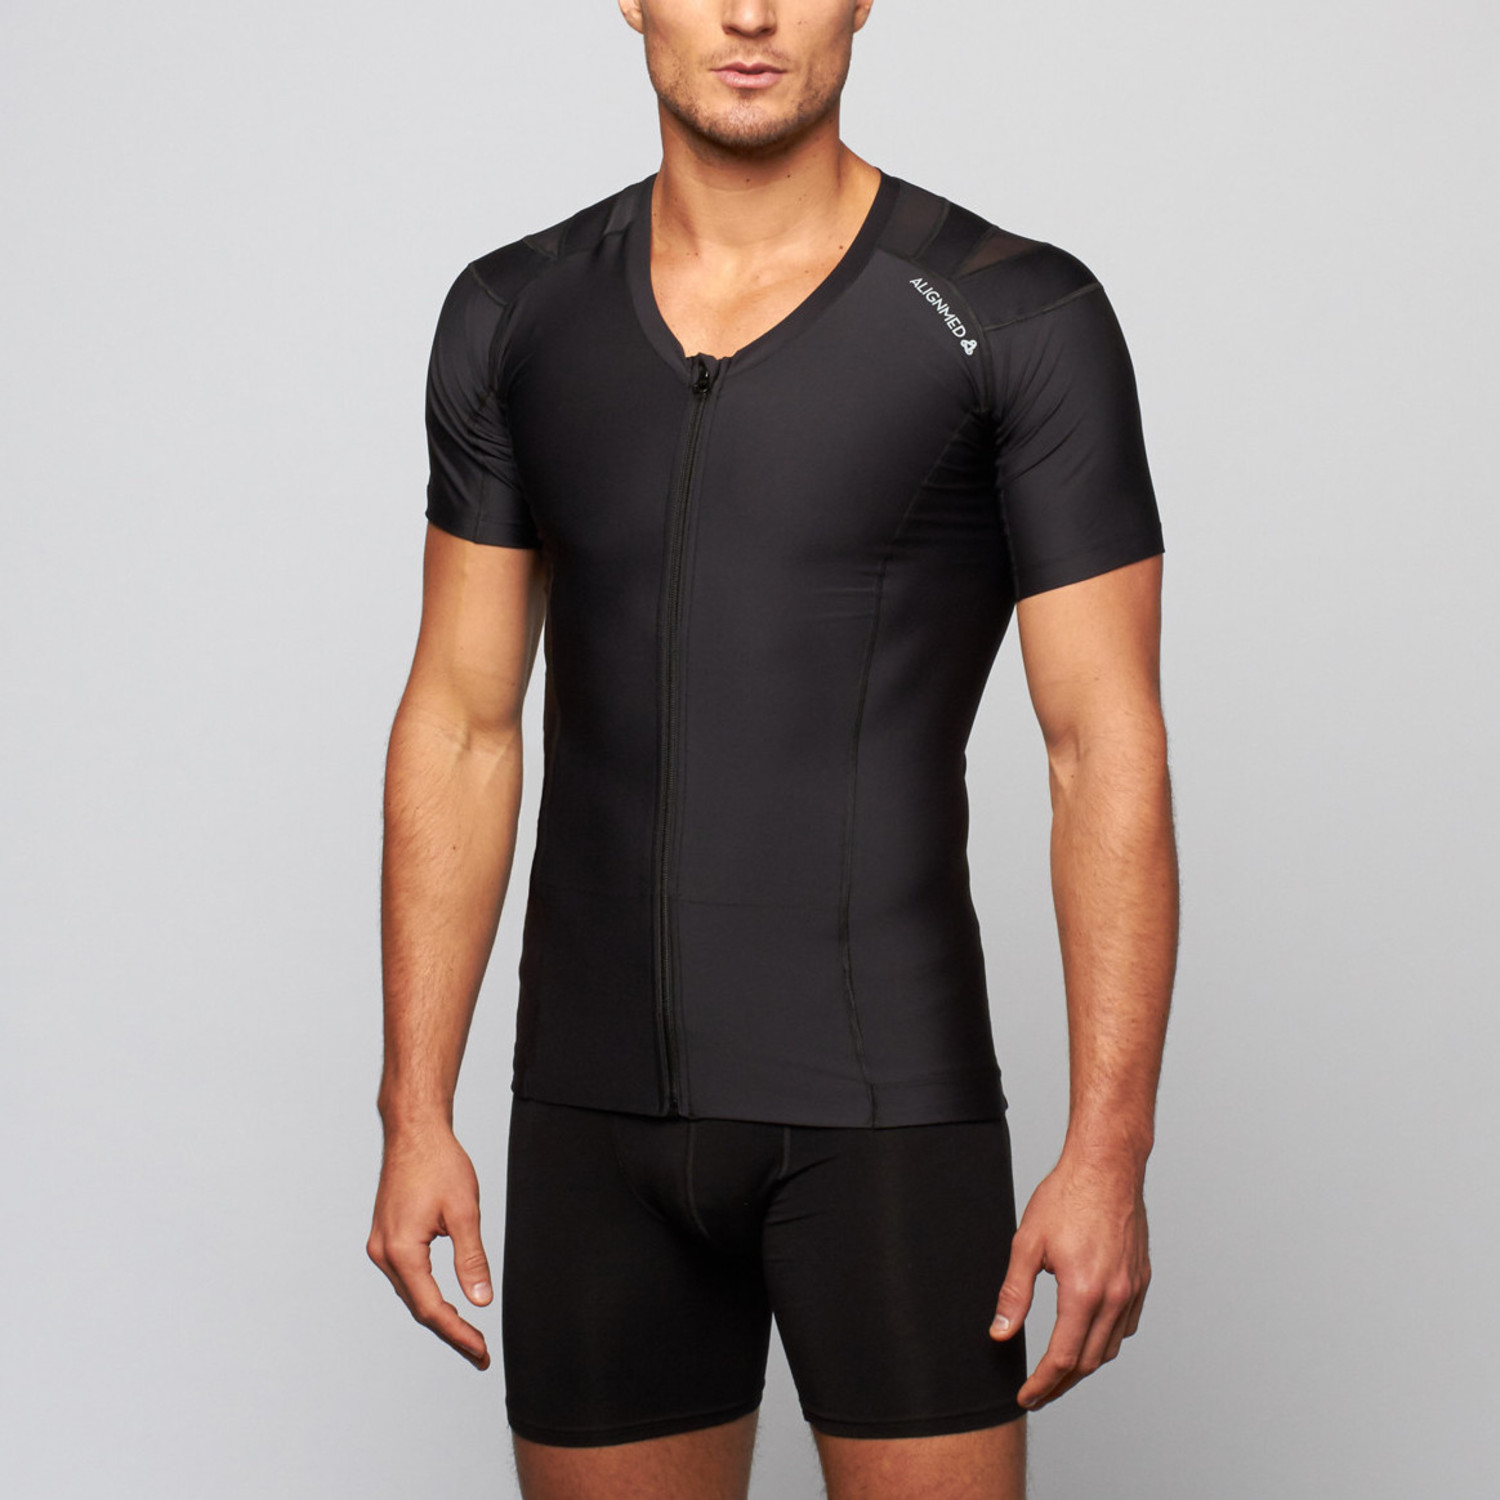 Men's Zipper Posture Shirt 2.0 // Black (2XL) - AlignMed - Touch of Modern